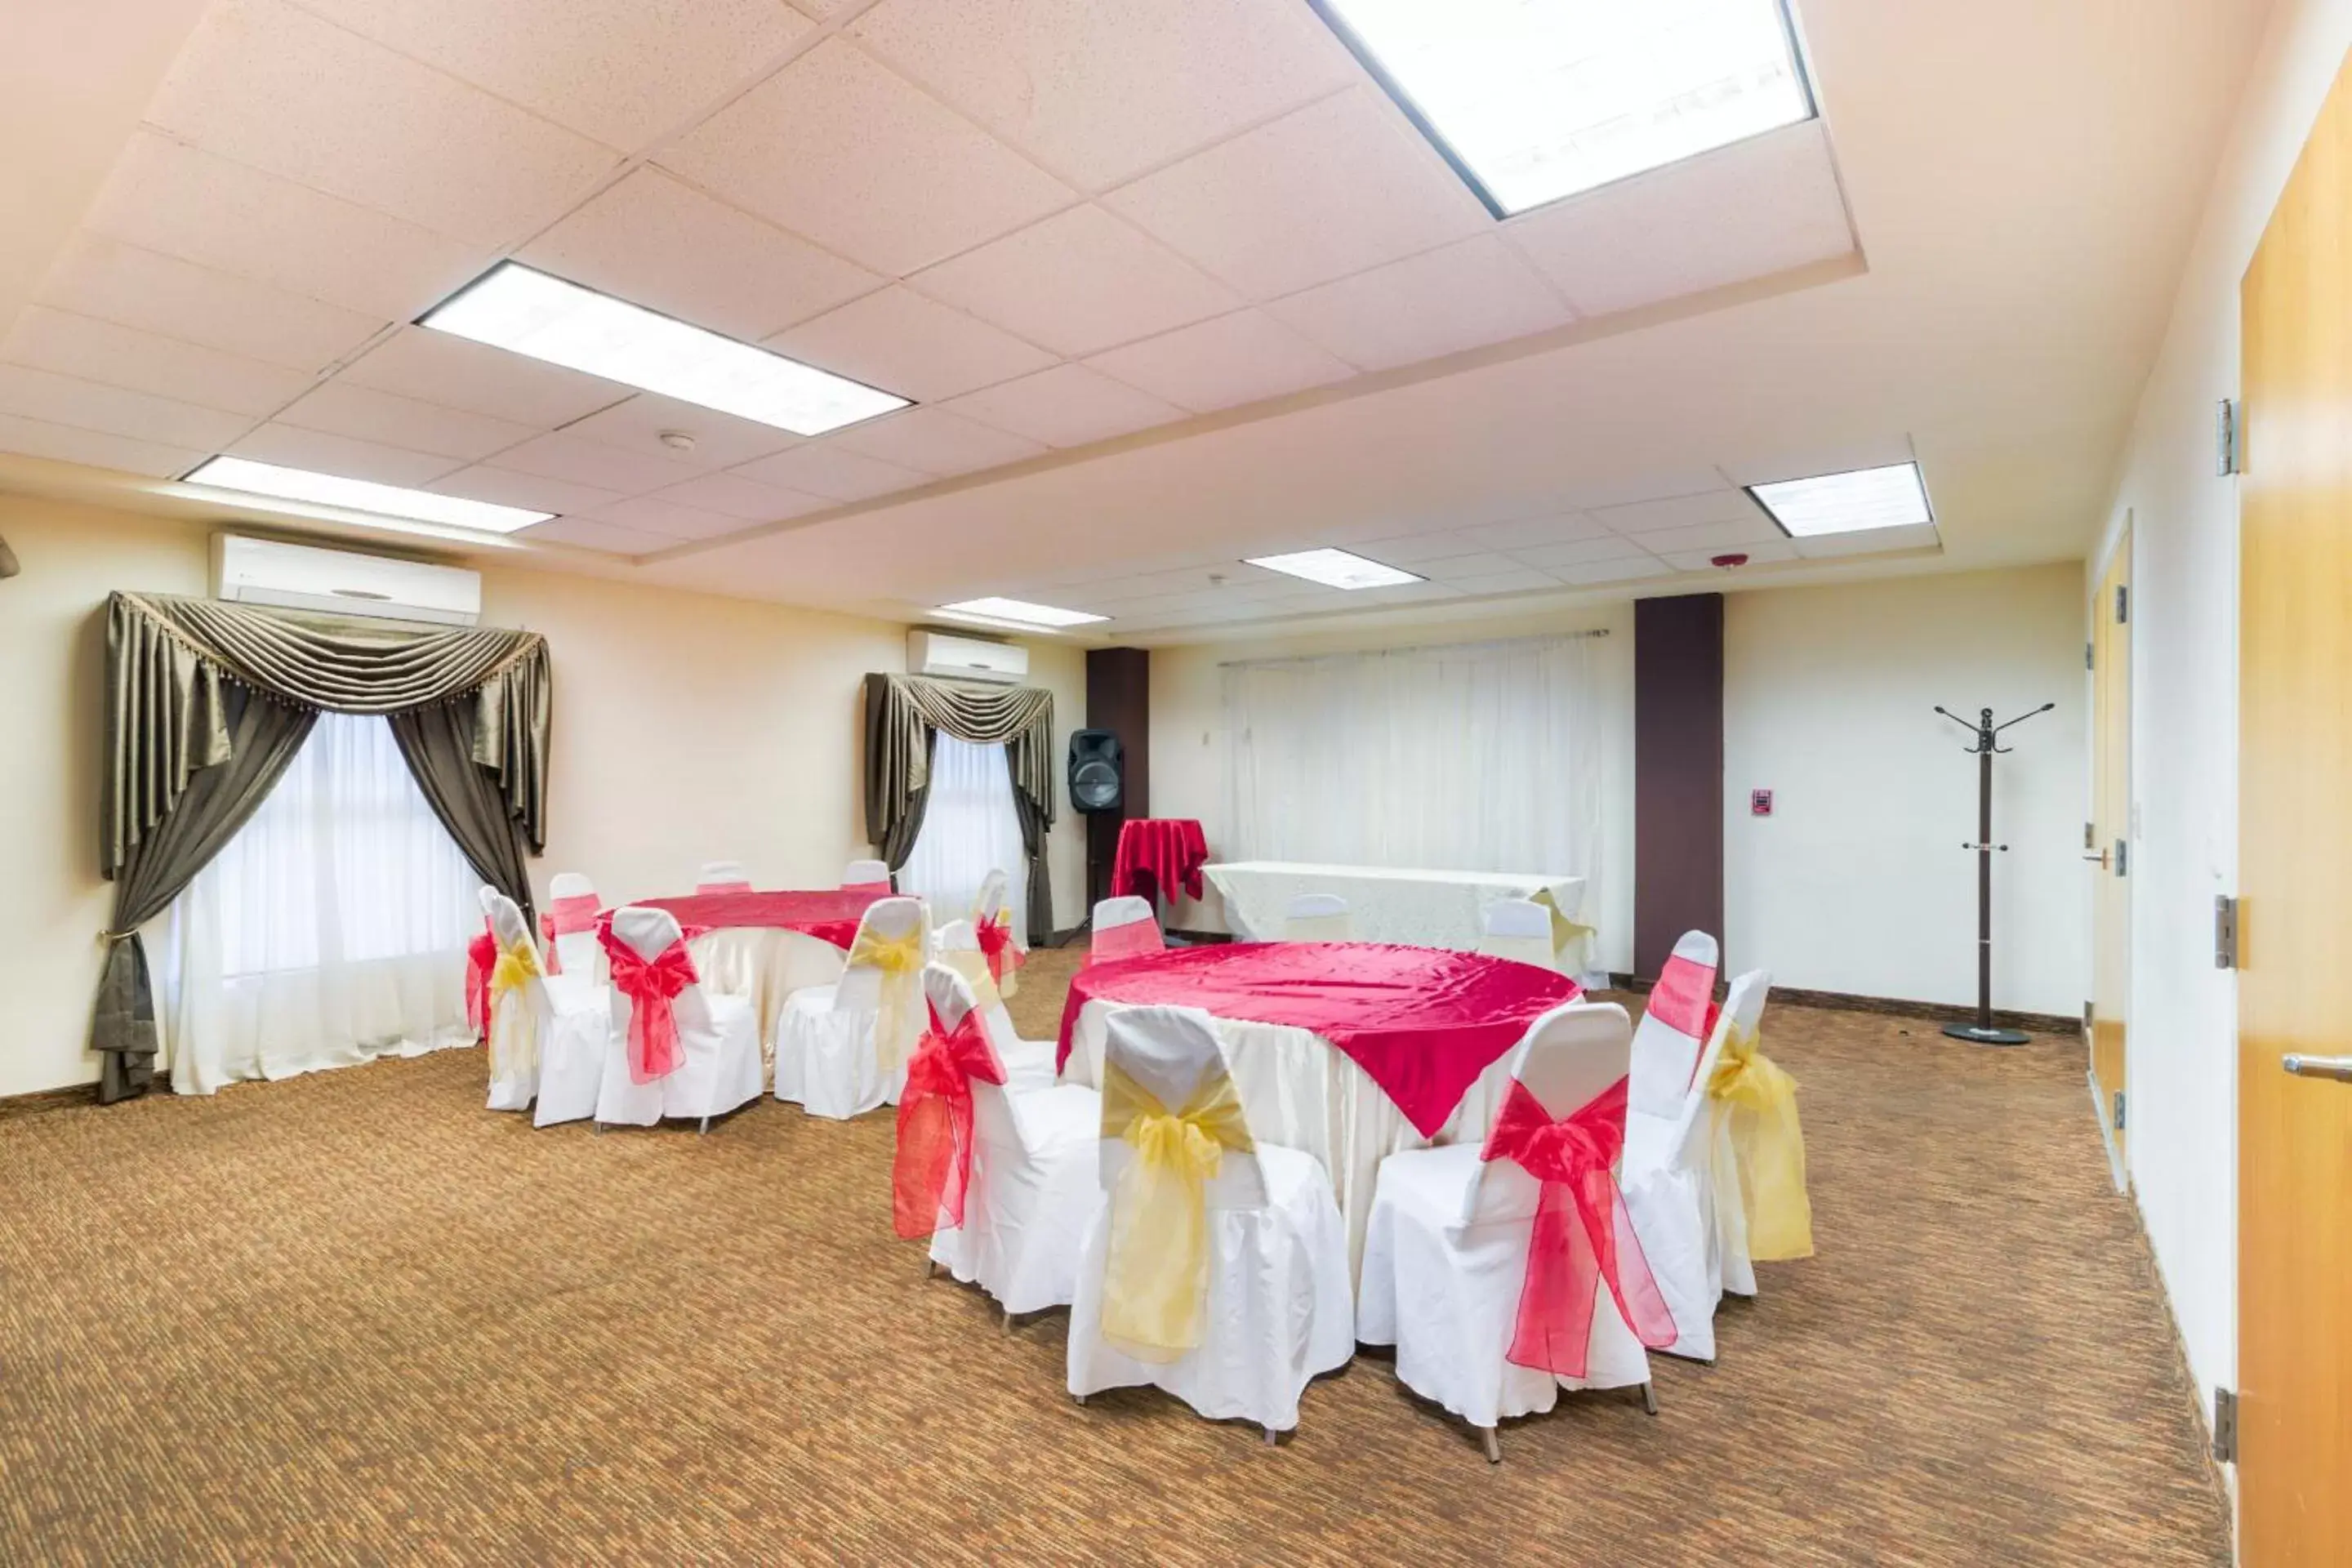 Banquet/Function facilities, Banquet Facilities in Capital O Hotel Herederos, Piedras Negras